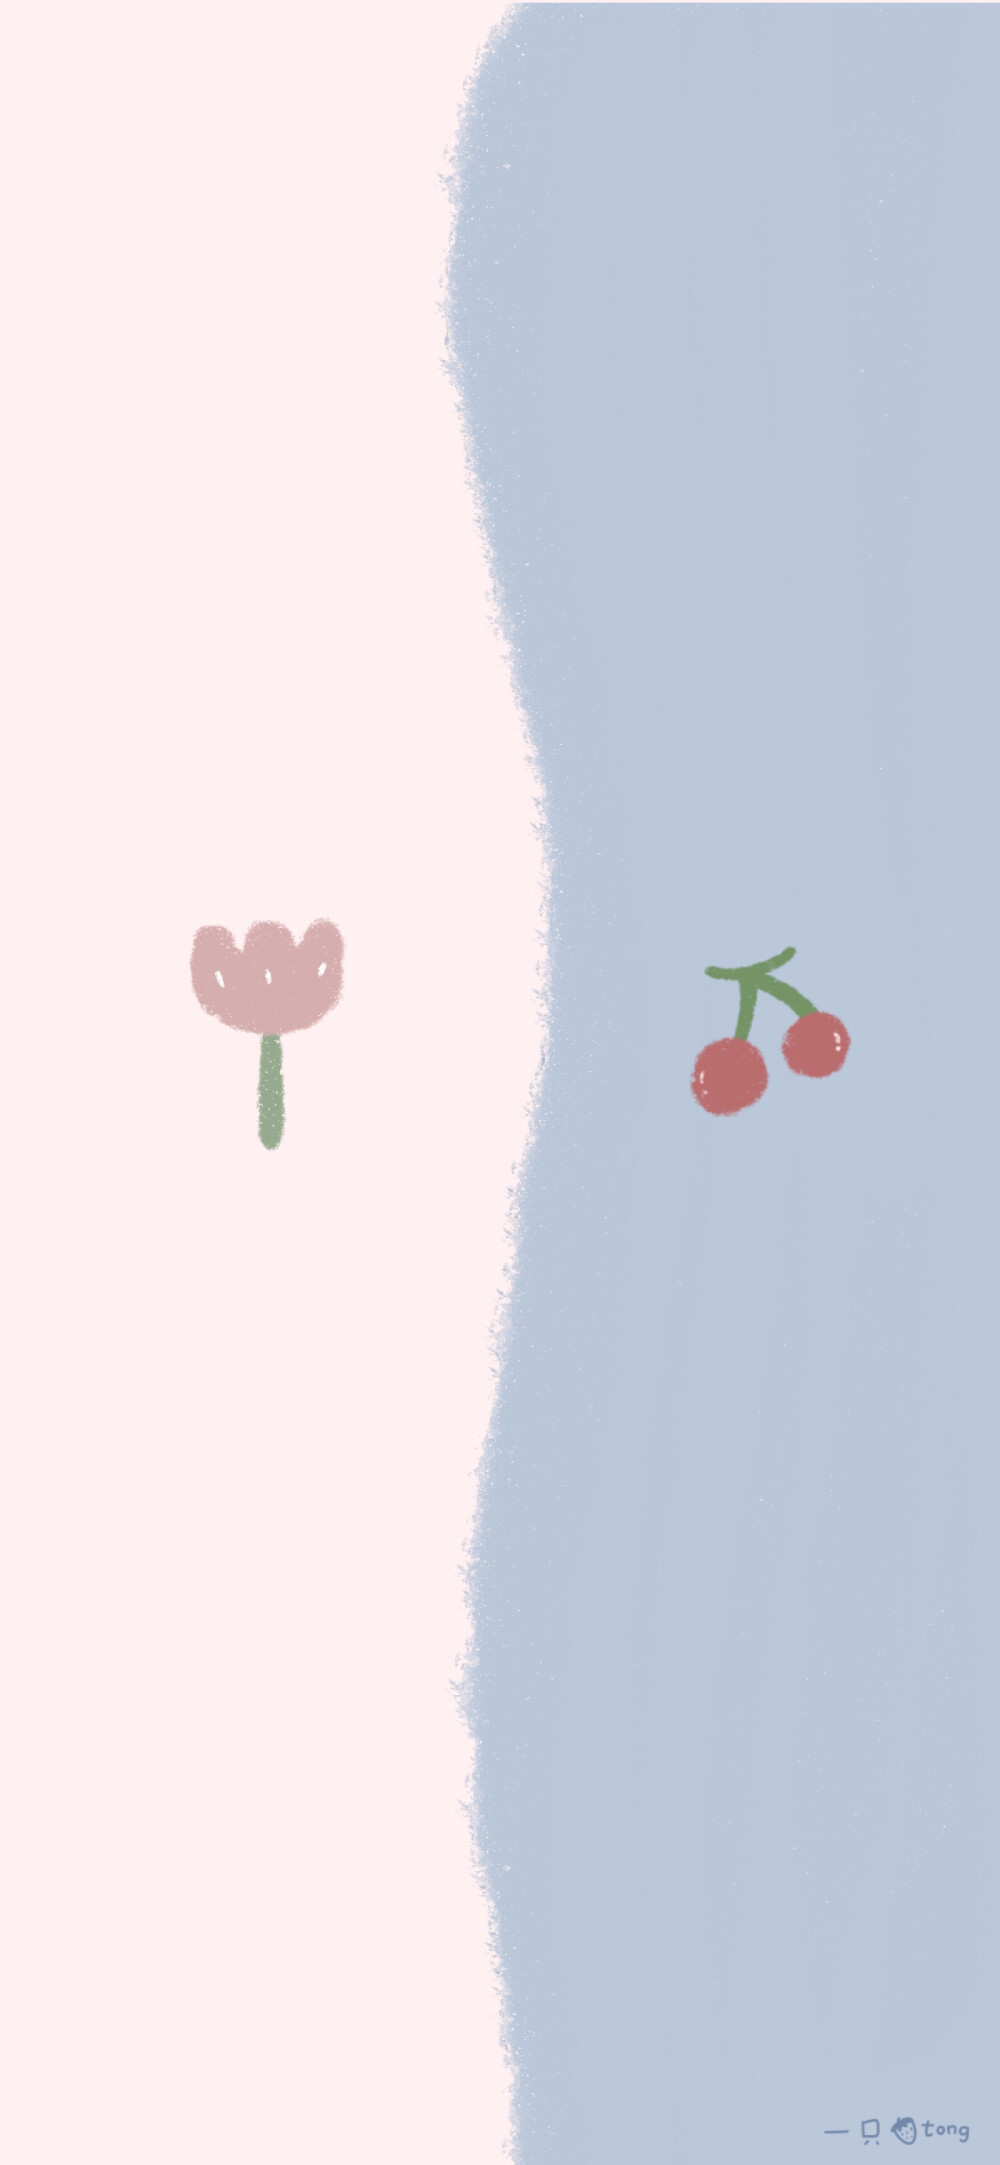 可爱手绘聊天壁纸
cr.一只草莓tong